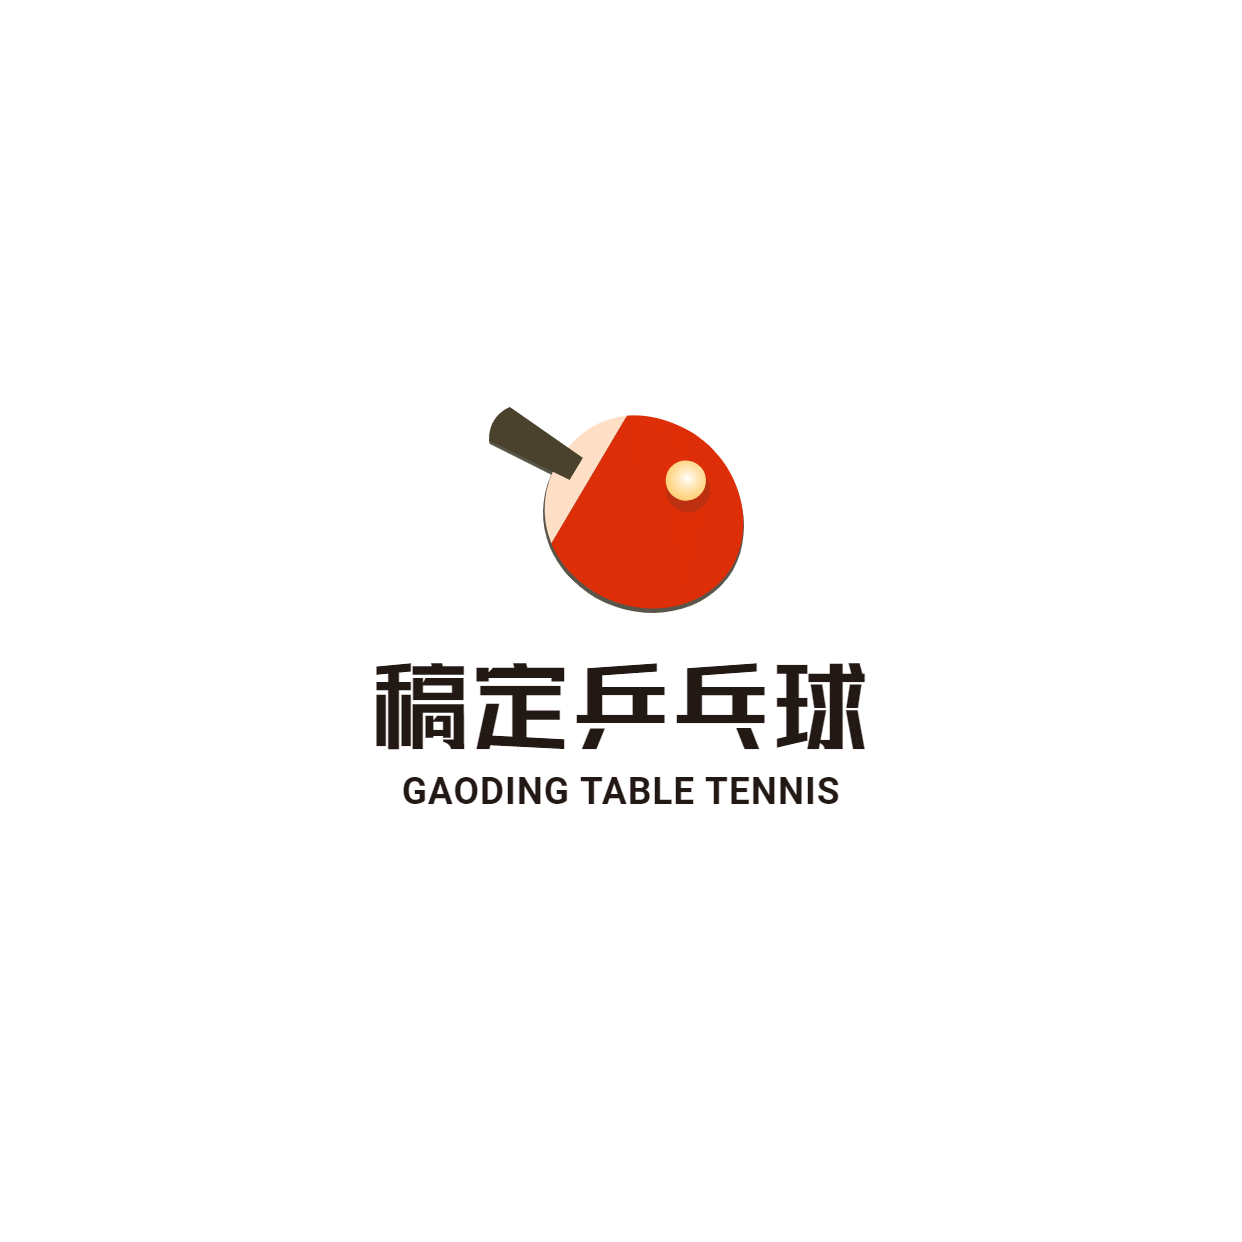 素质教育乒乓球培训头像logo预览效果